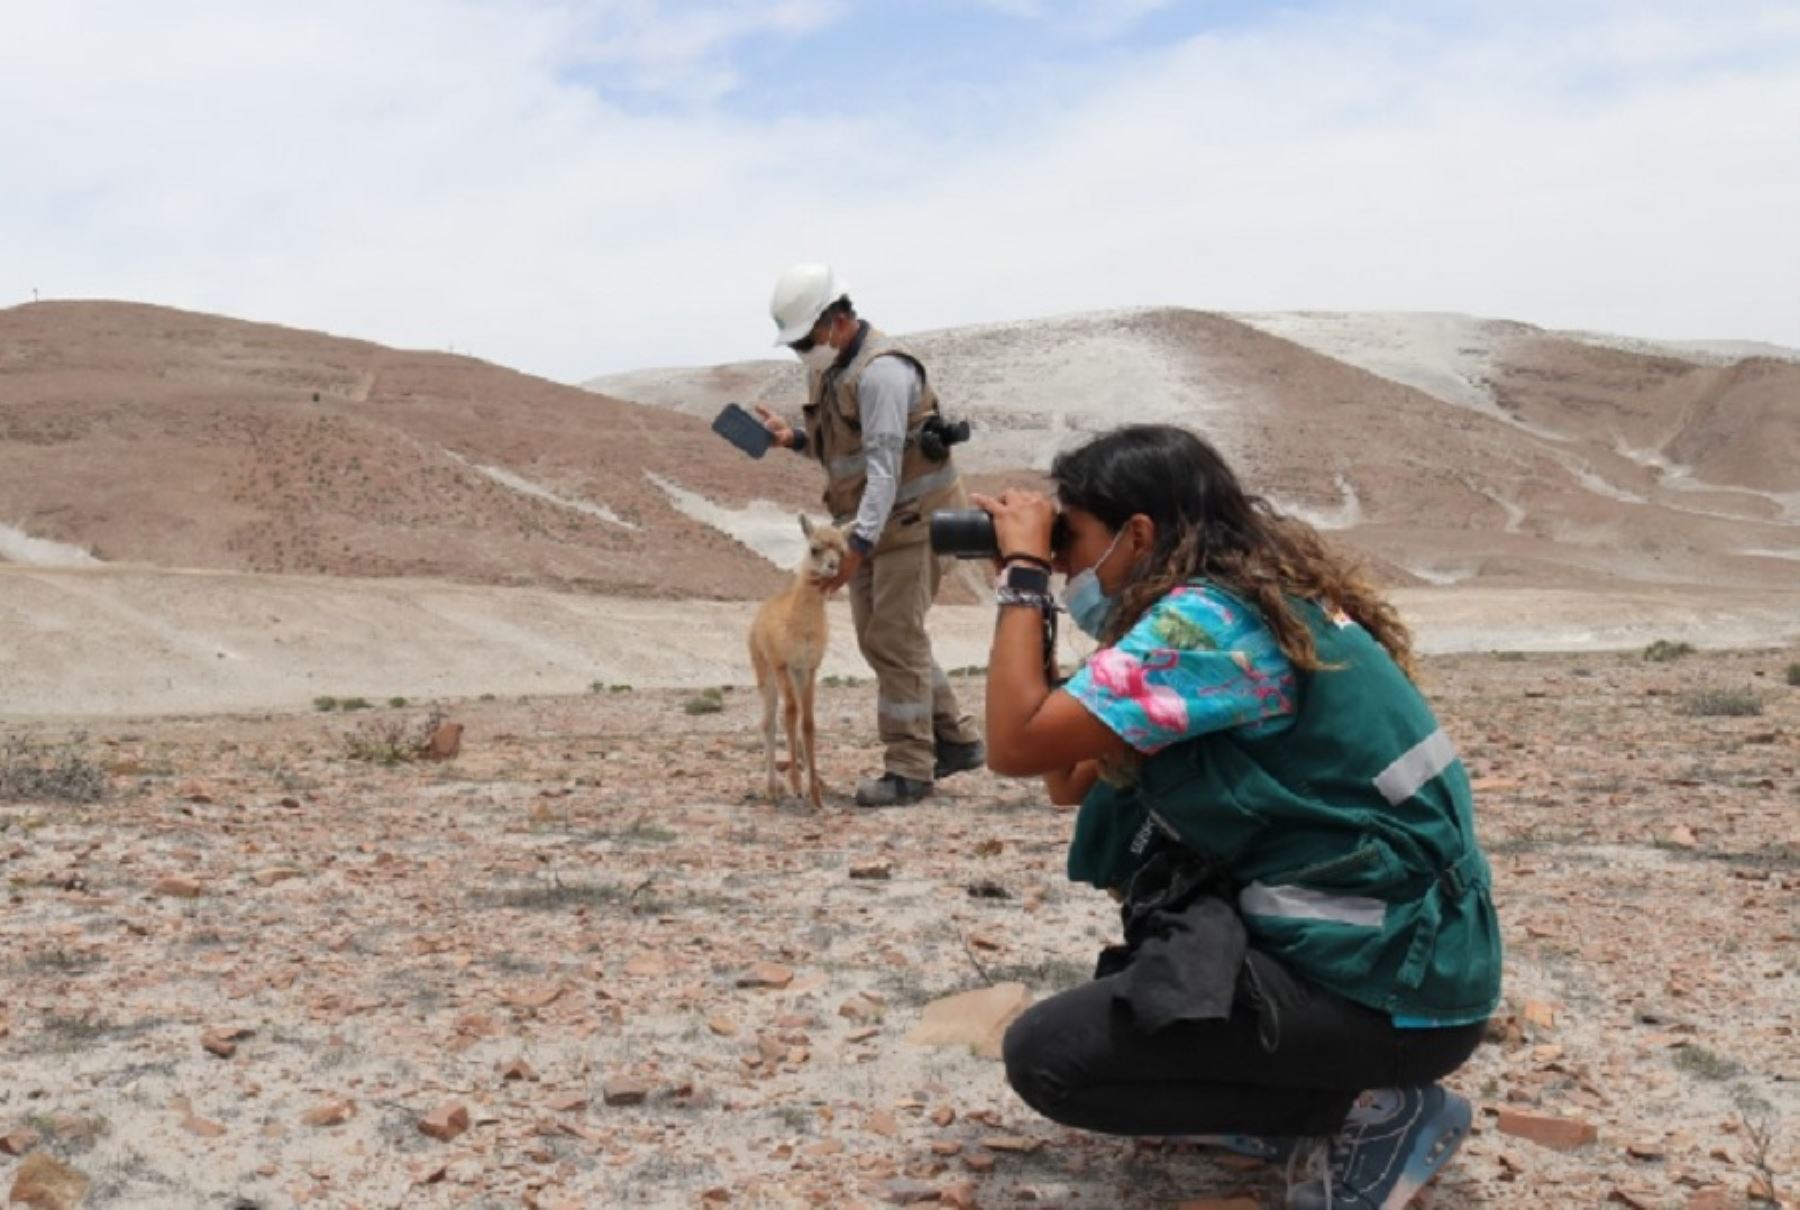 Exitoso fue el rescate y liberación de una cría de guanaco (Lama guanice) en Arequipa a cargo de especialistas del Servicio Nacional Forestal y Fauna Silvestre (Serfor), quienes lograron que se reencontrara con su familia.